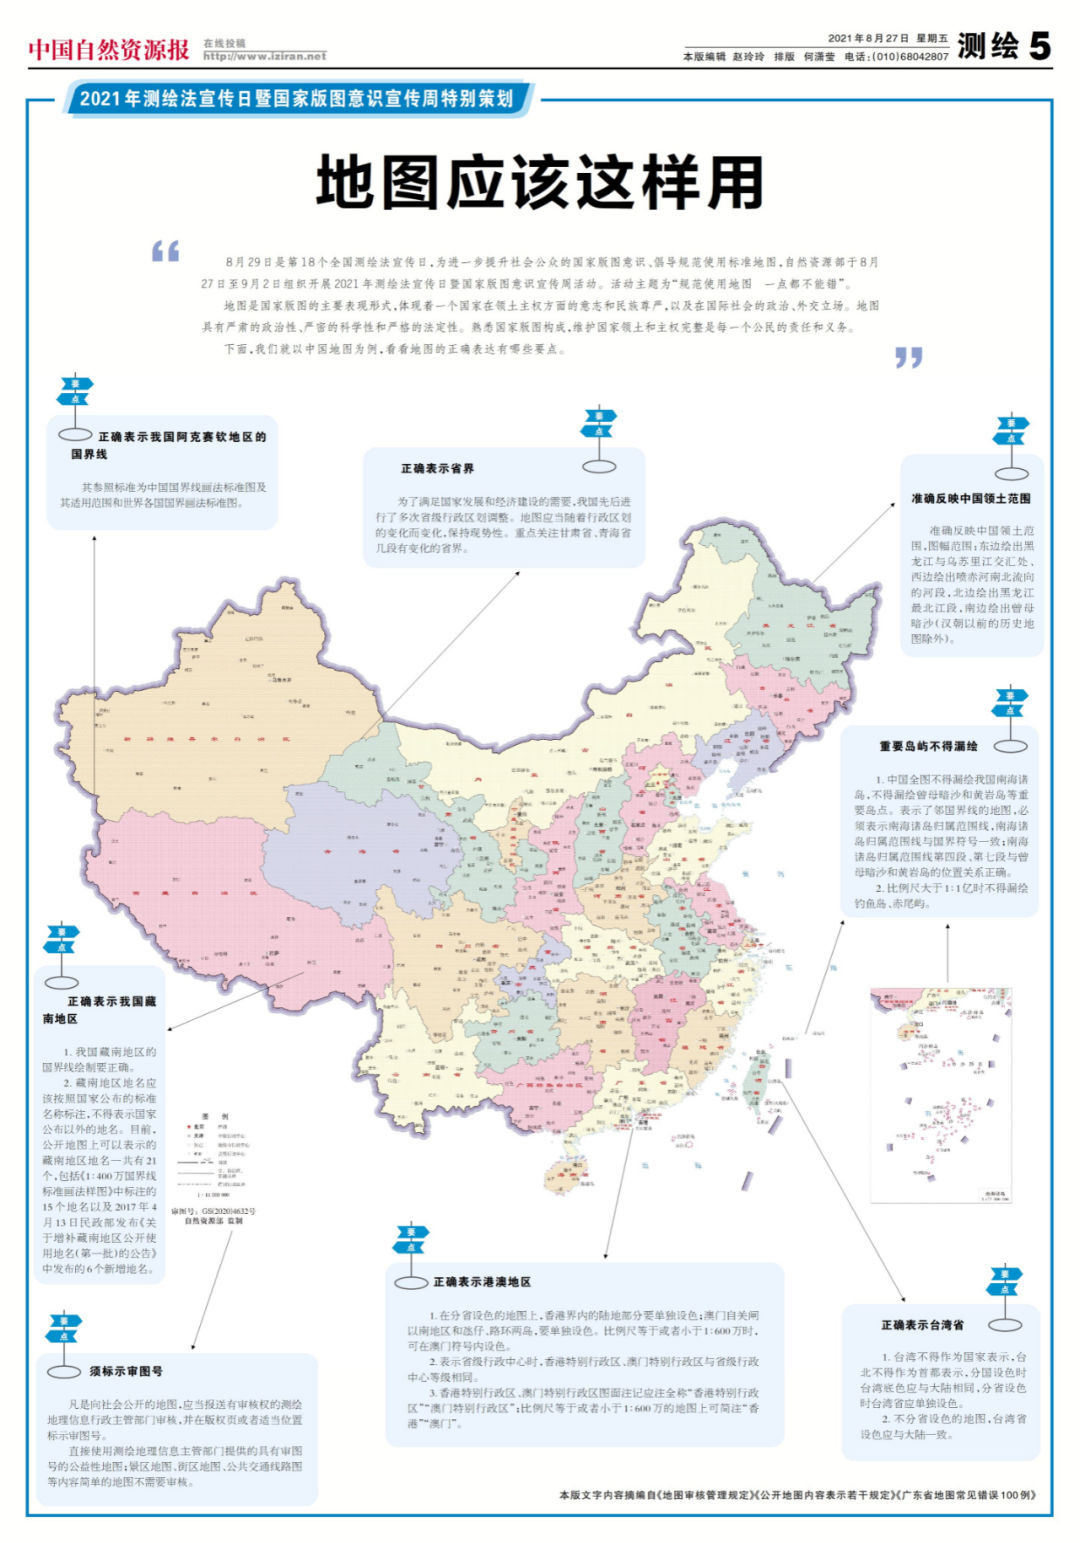 5分钟巧记中国地图图片